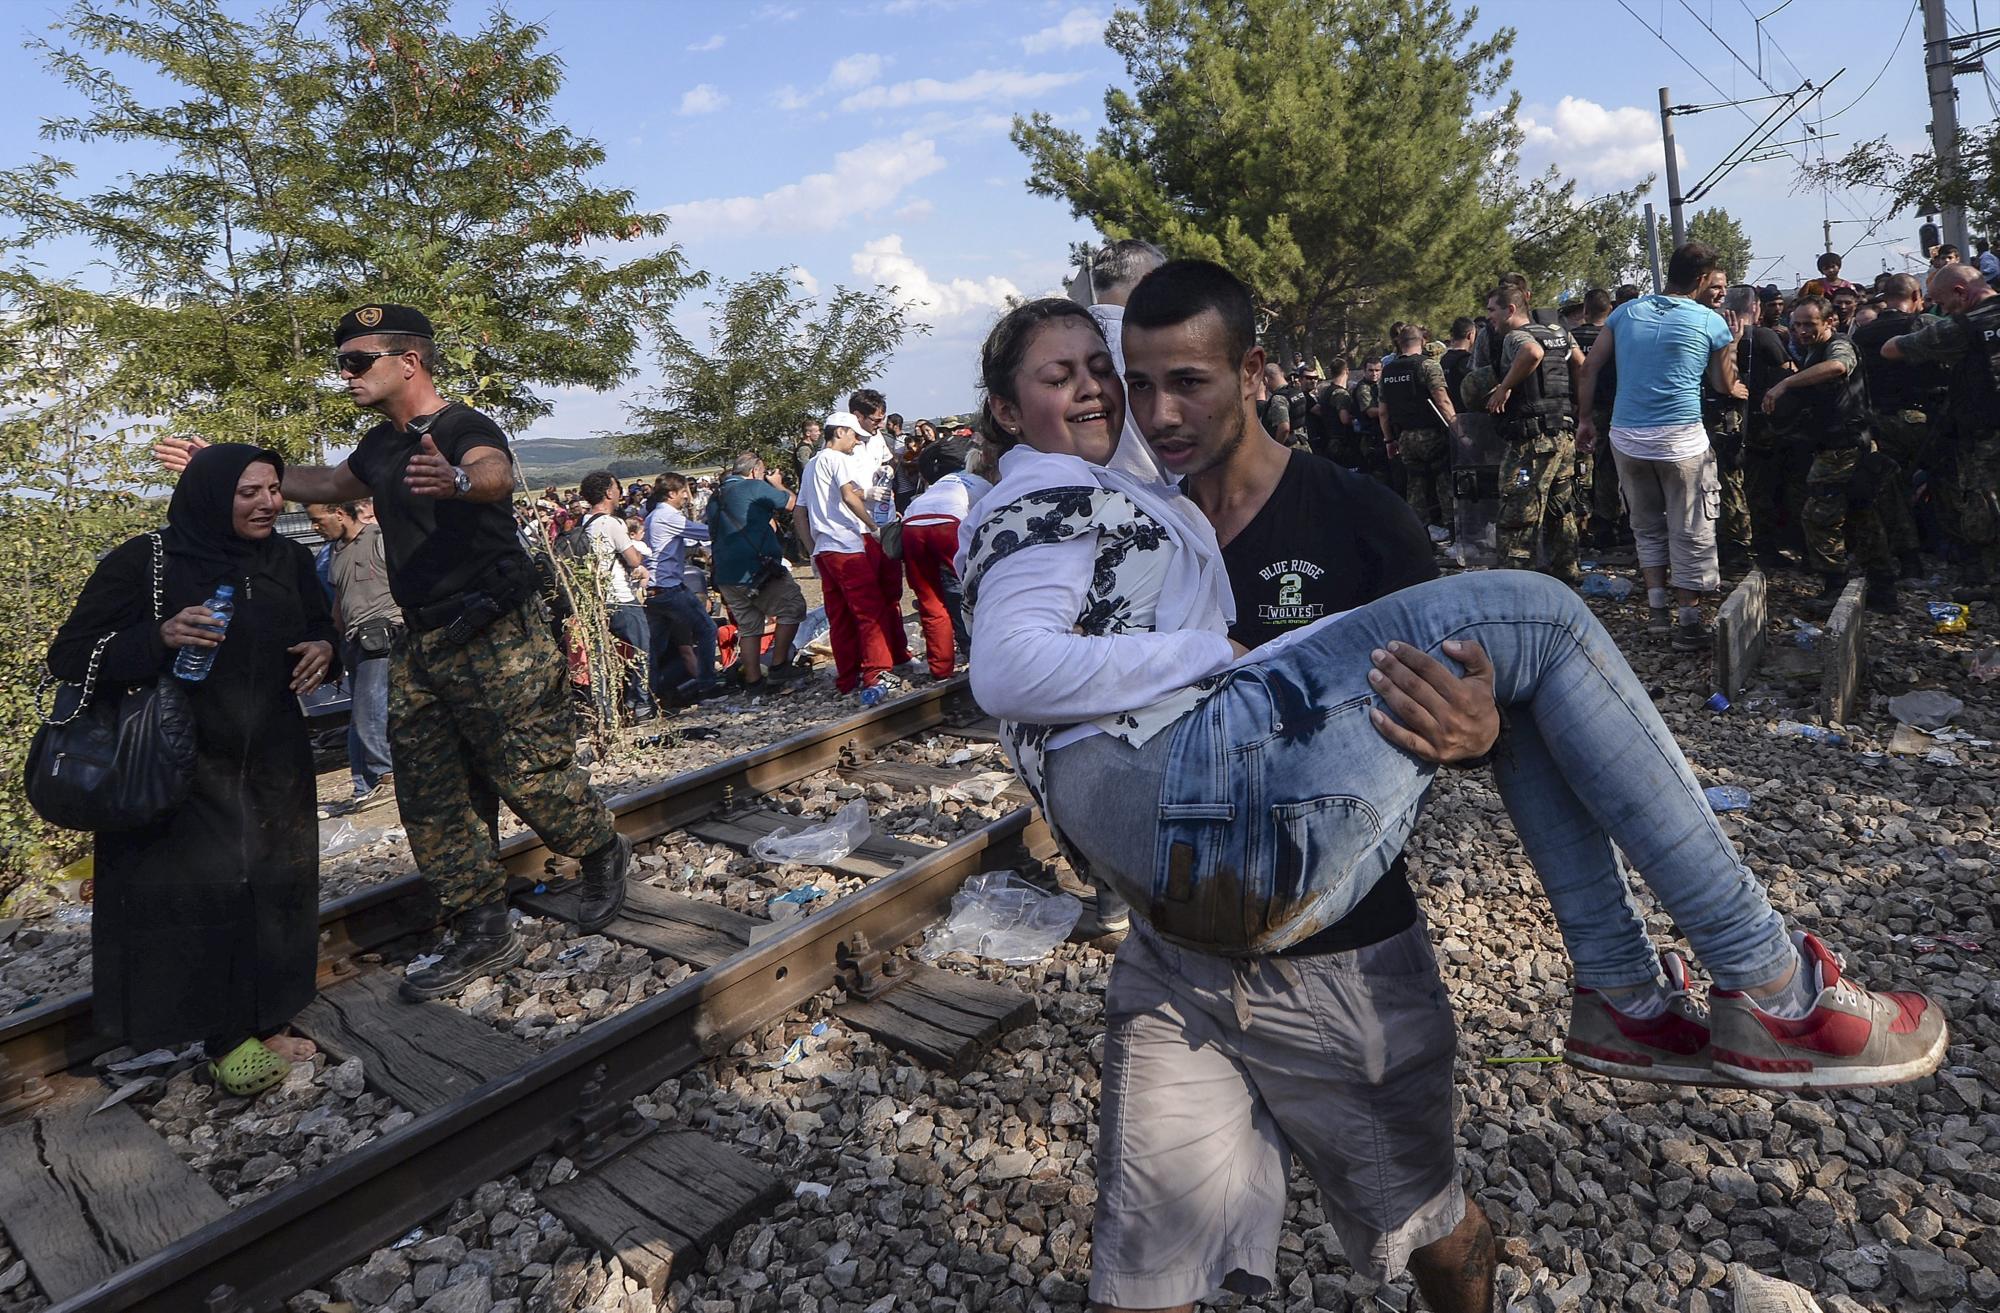 La policía de Macedonia lanzó hoy granadas aturdidoras contra los refugiados que intentaban atravesar el paso fronterizo con Grecia, después de que ayer el Gobierno decretase el estado de emergencia en las fronteras ante la masiva entrada de inmigrantes que vive el país. 